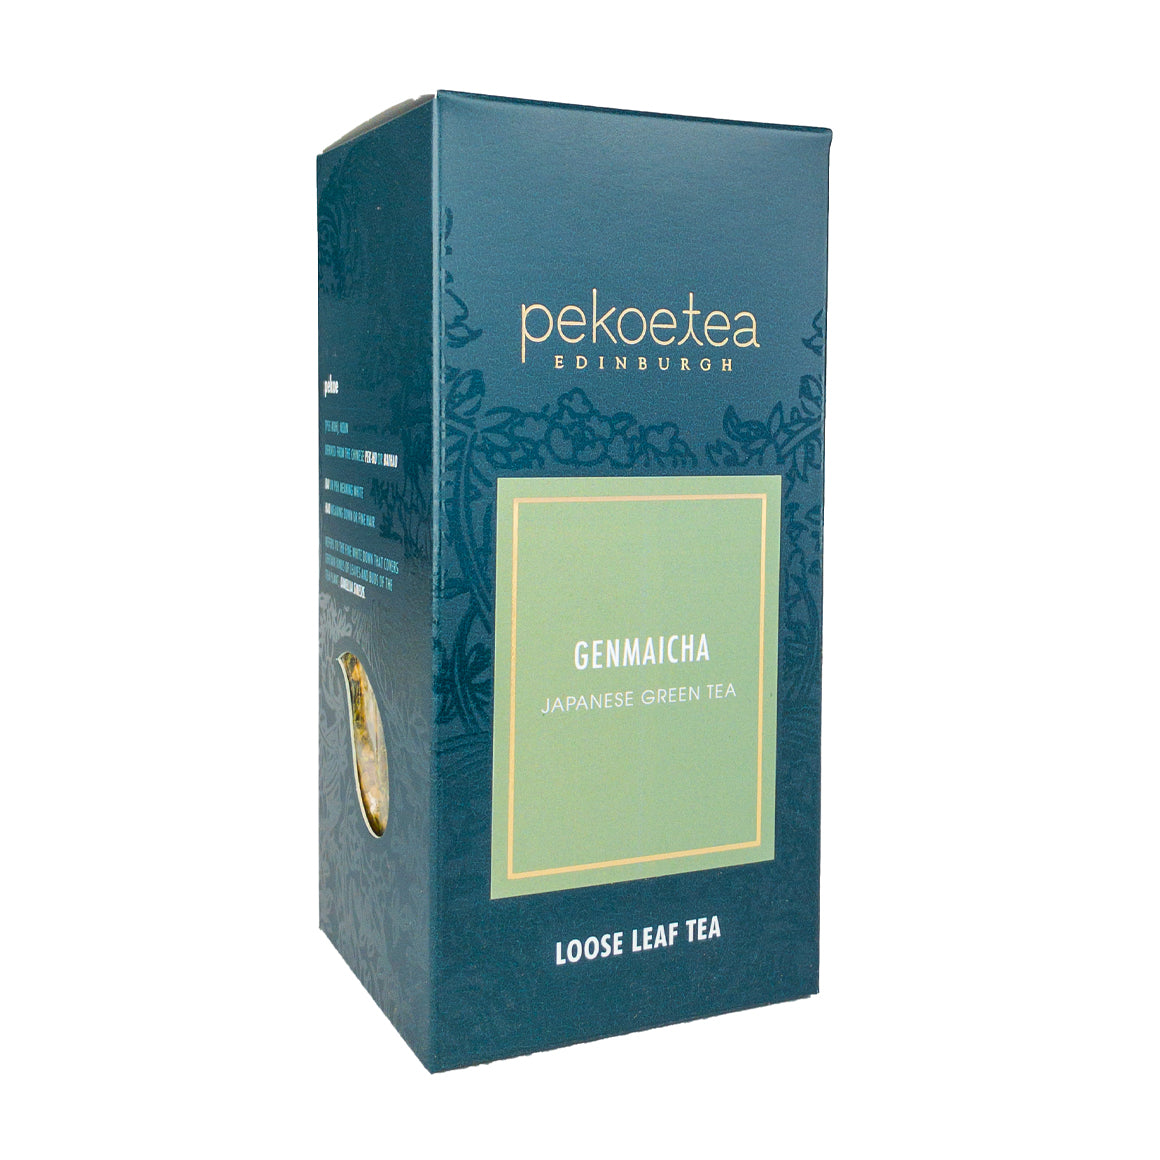 PekoeTea Edinburgh Genmaicha Japanese Green Tea Loose Leaf Box 